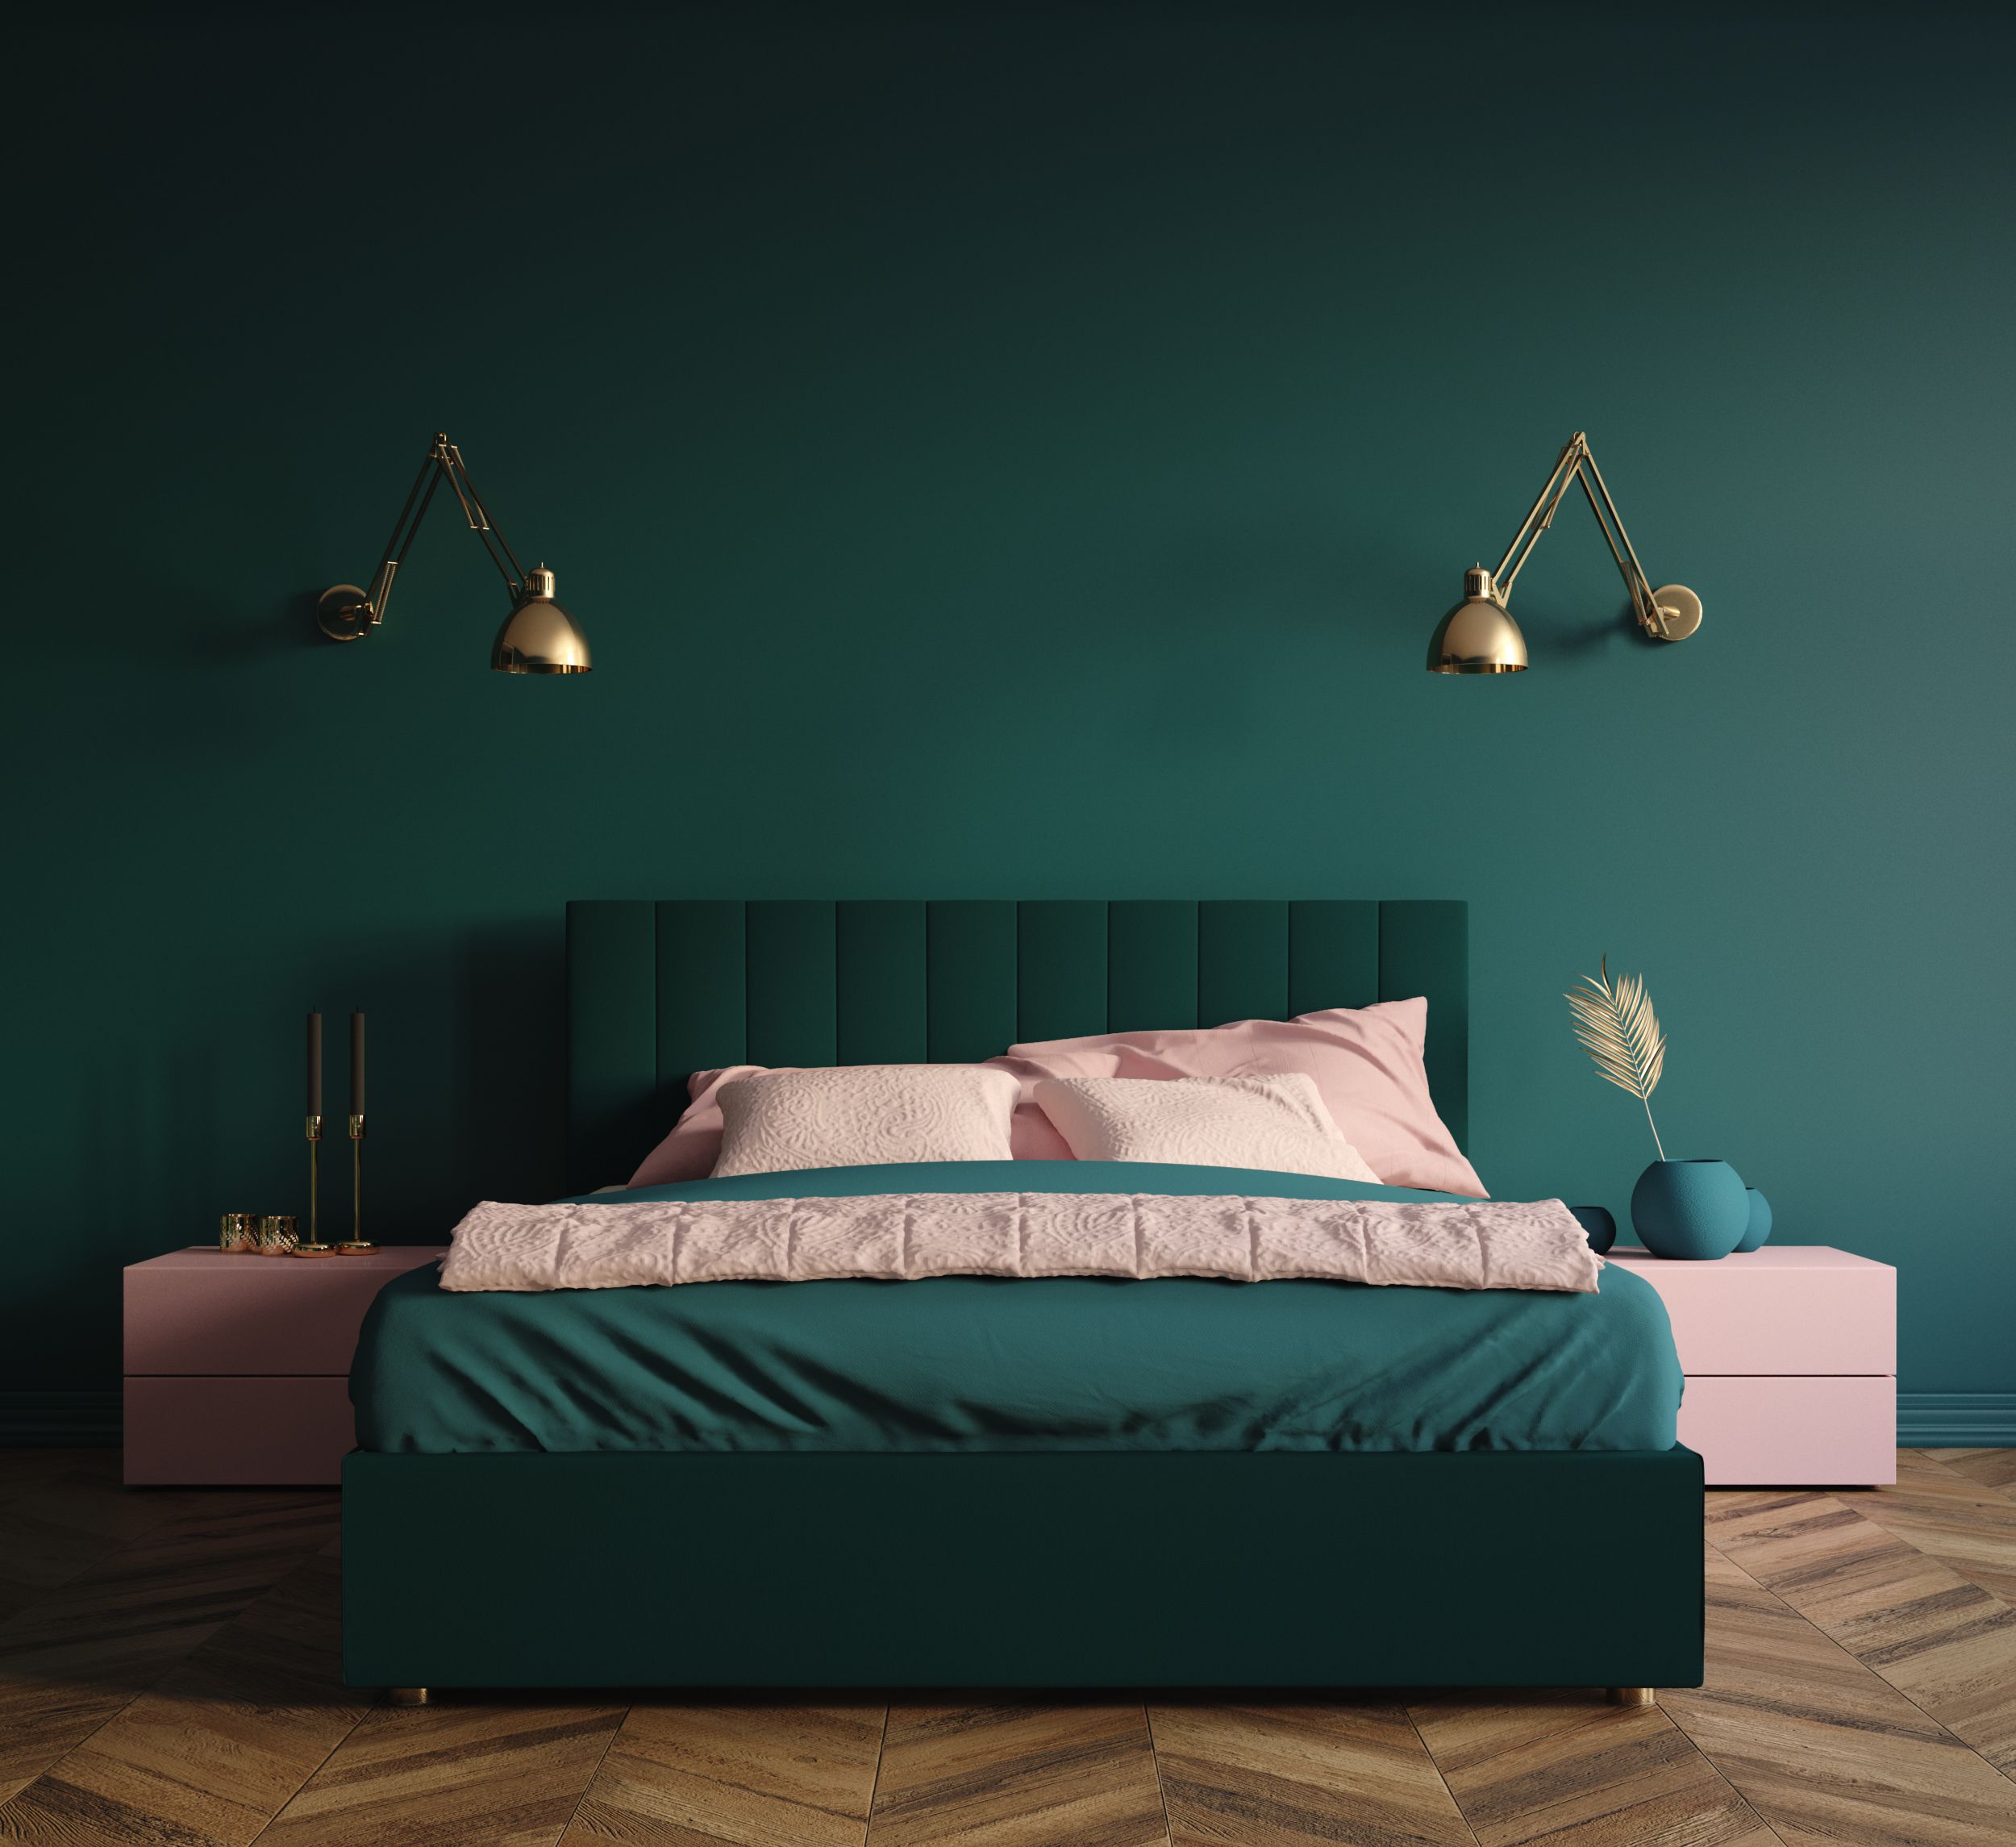 Wandfarben für das Schlafzimmer: Die sorgen für einen guten Schlaf